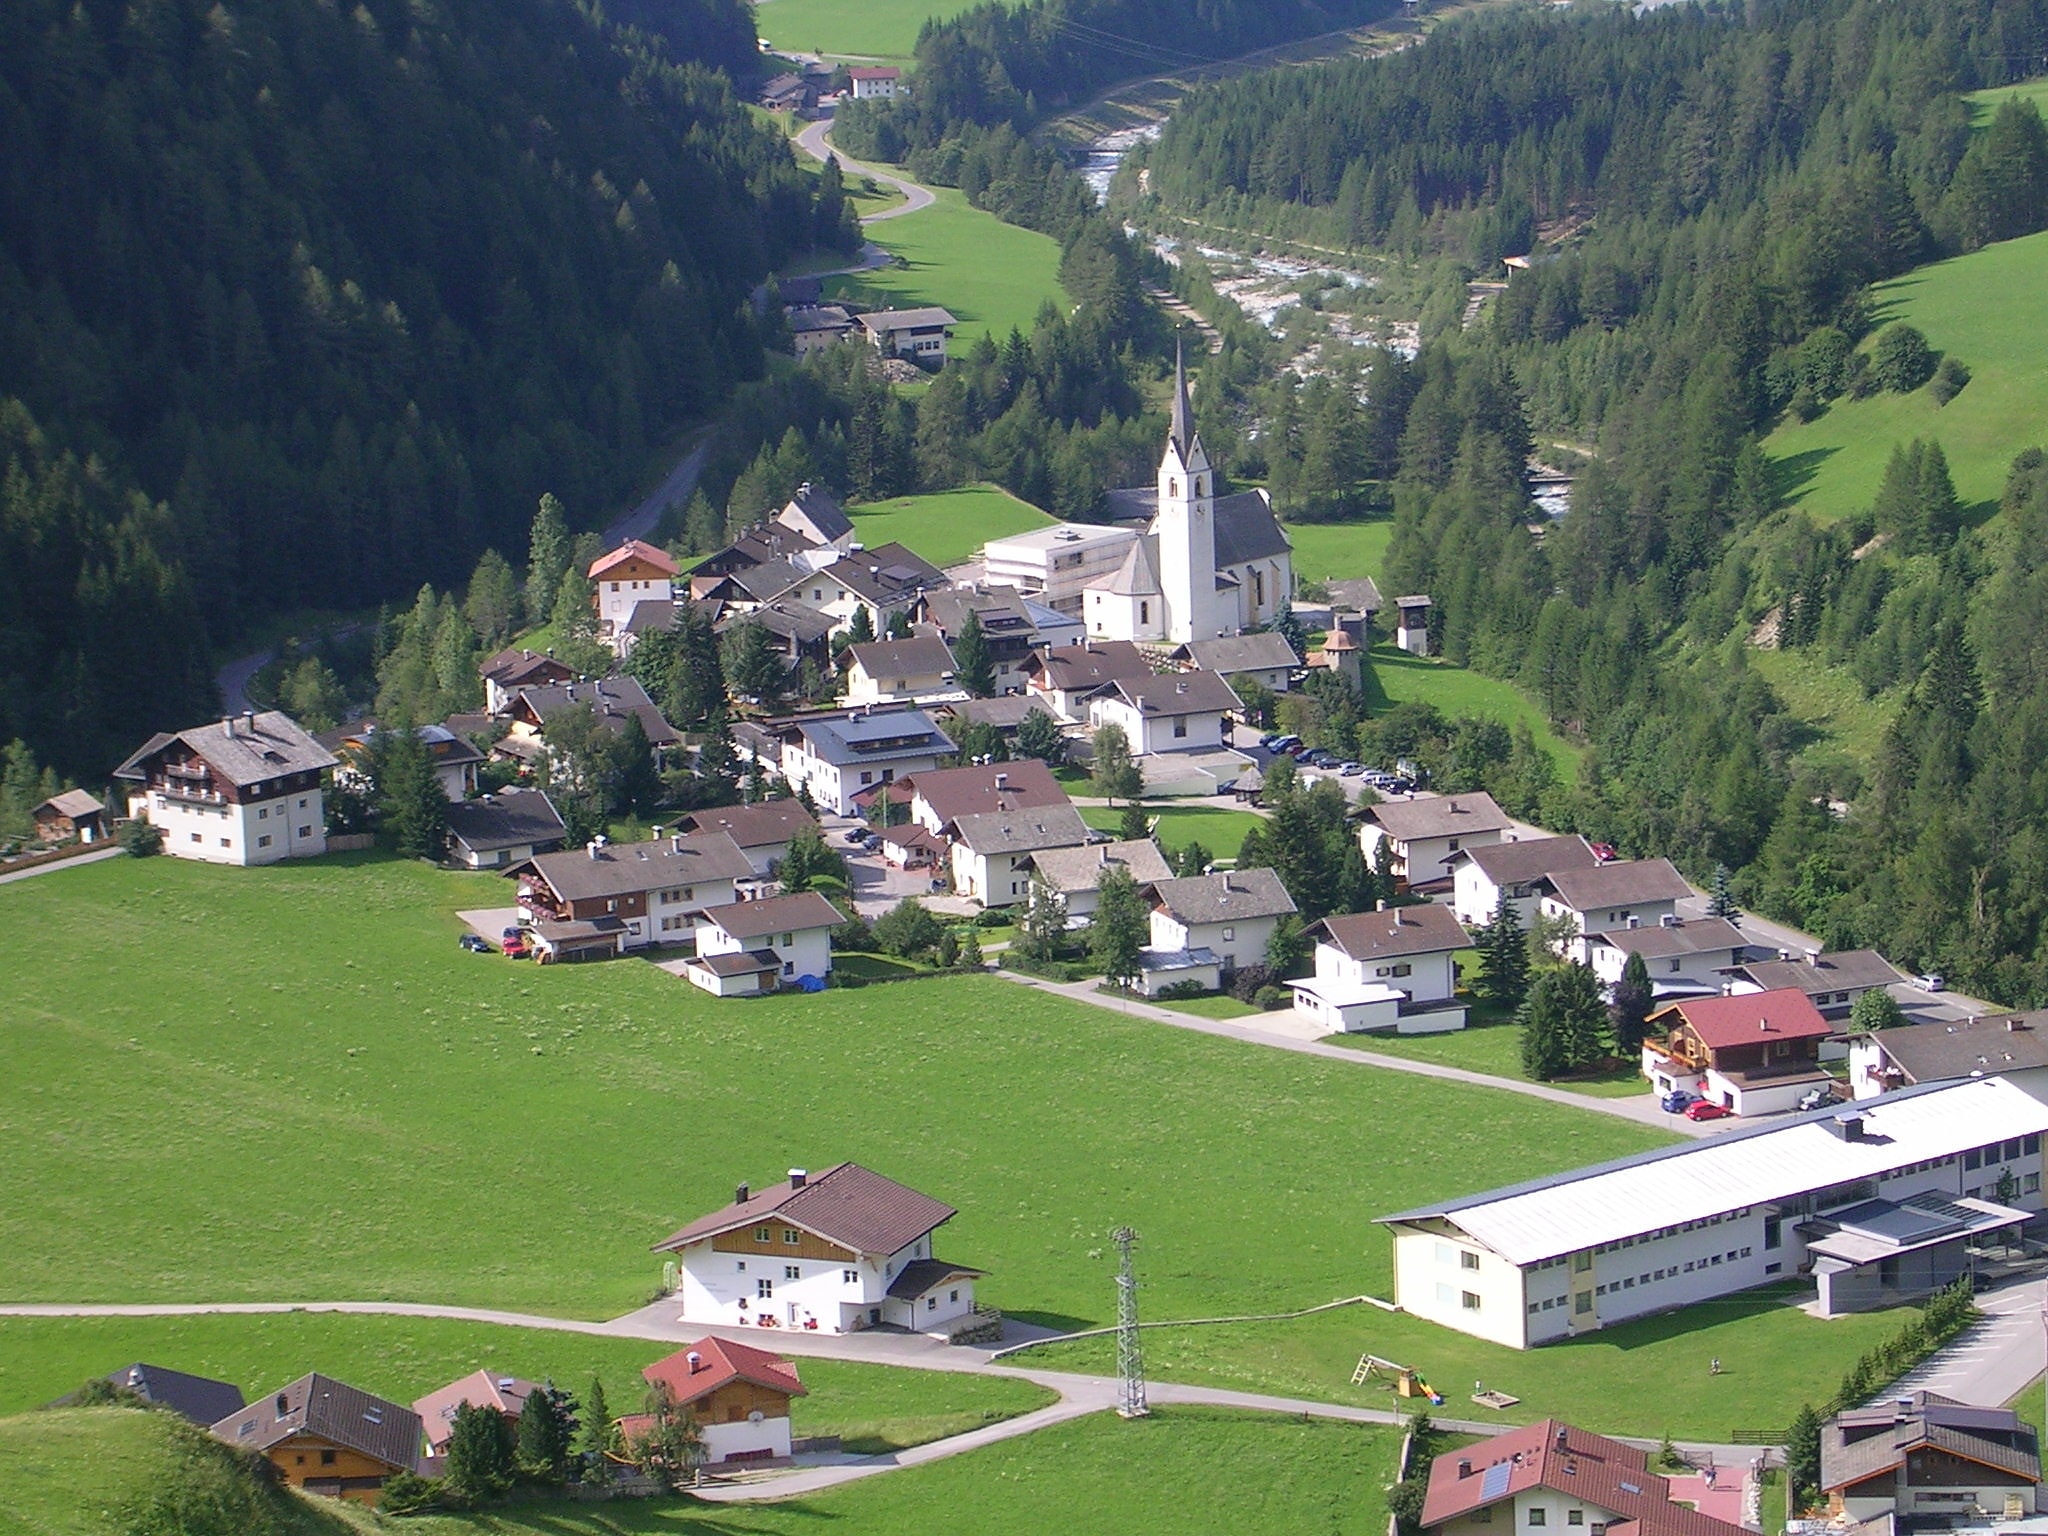 Kals am Großglockner, Austria